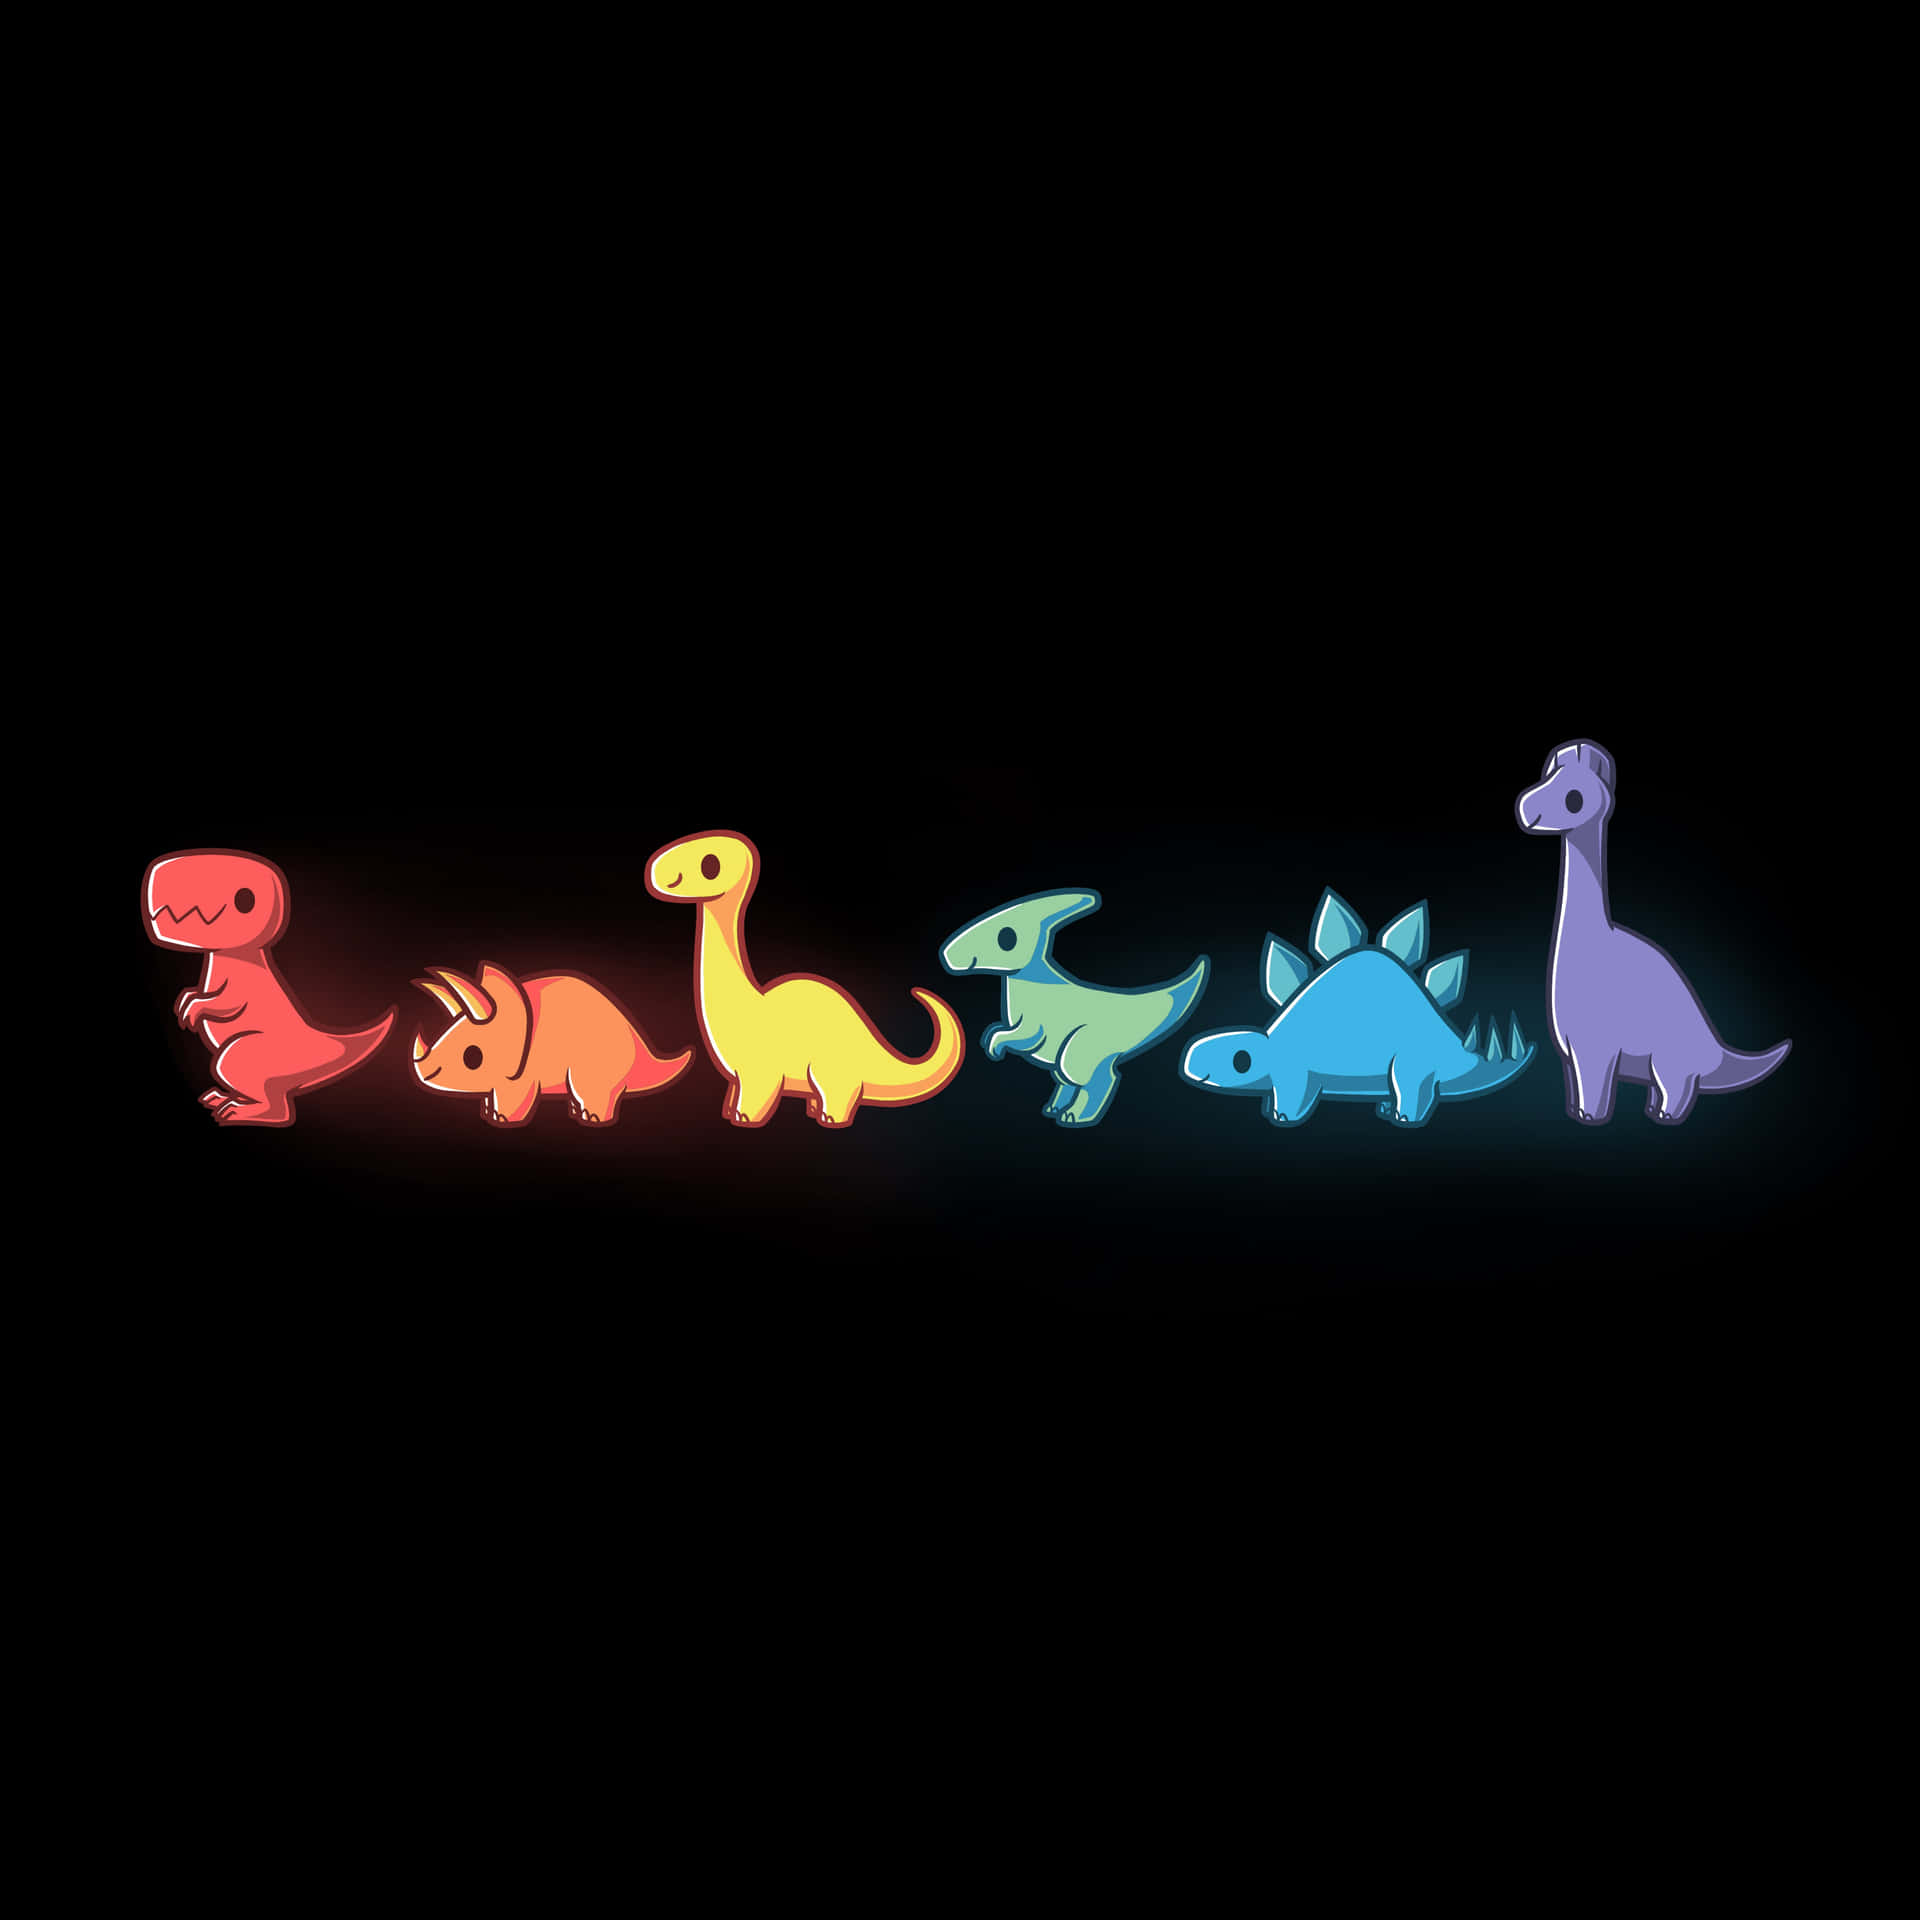 Neon Dinosaur Illustration Wallpaper